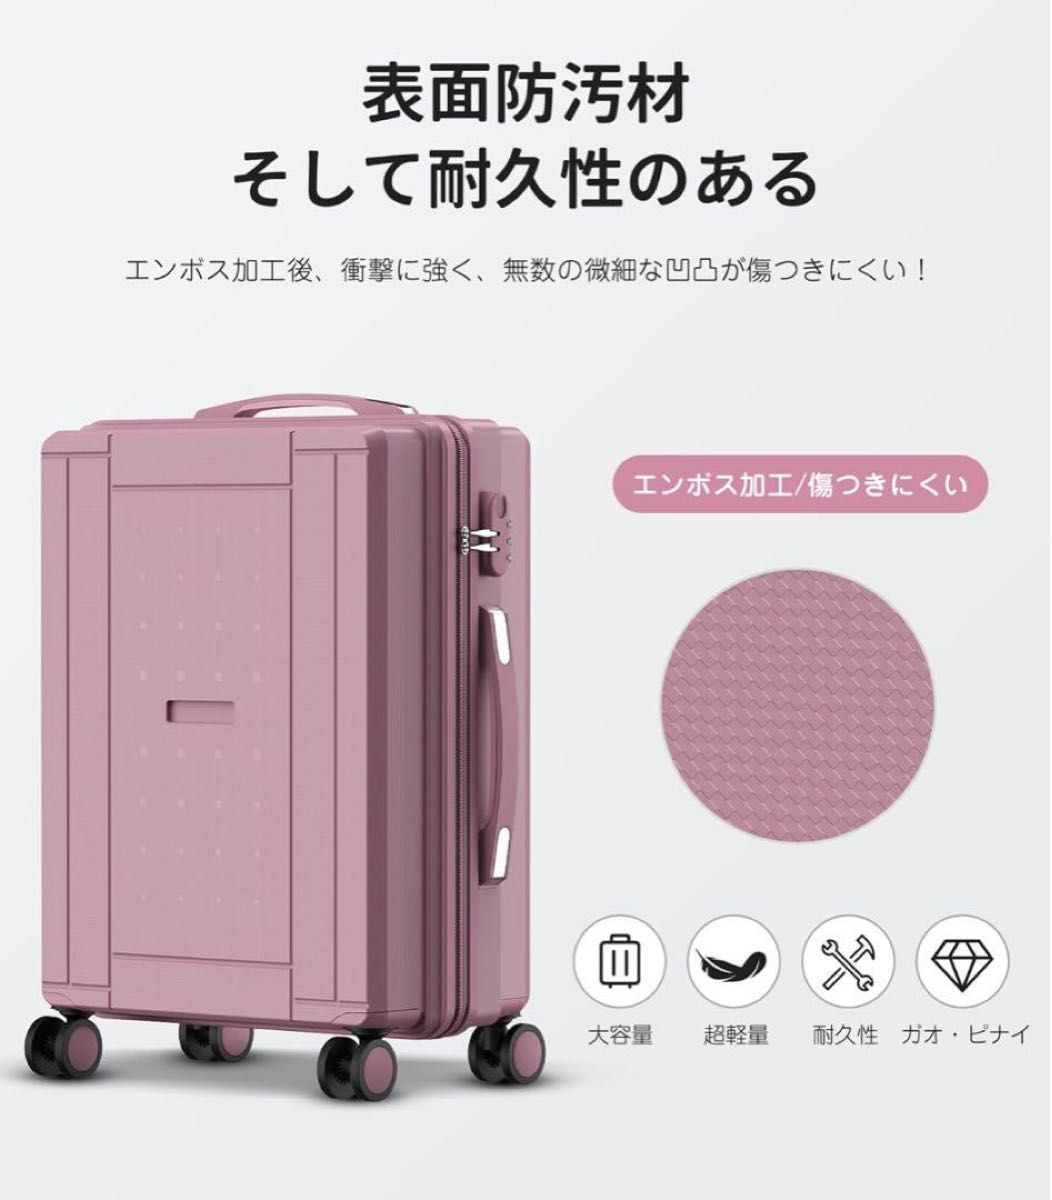 キャリーケースM 24インチ ピンクスーツケース 可愛い TSAロック 軽量 ダイヤルロック